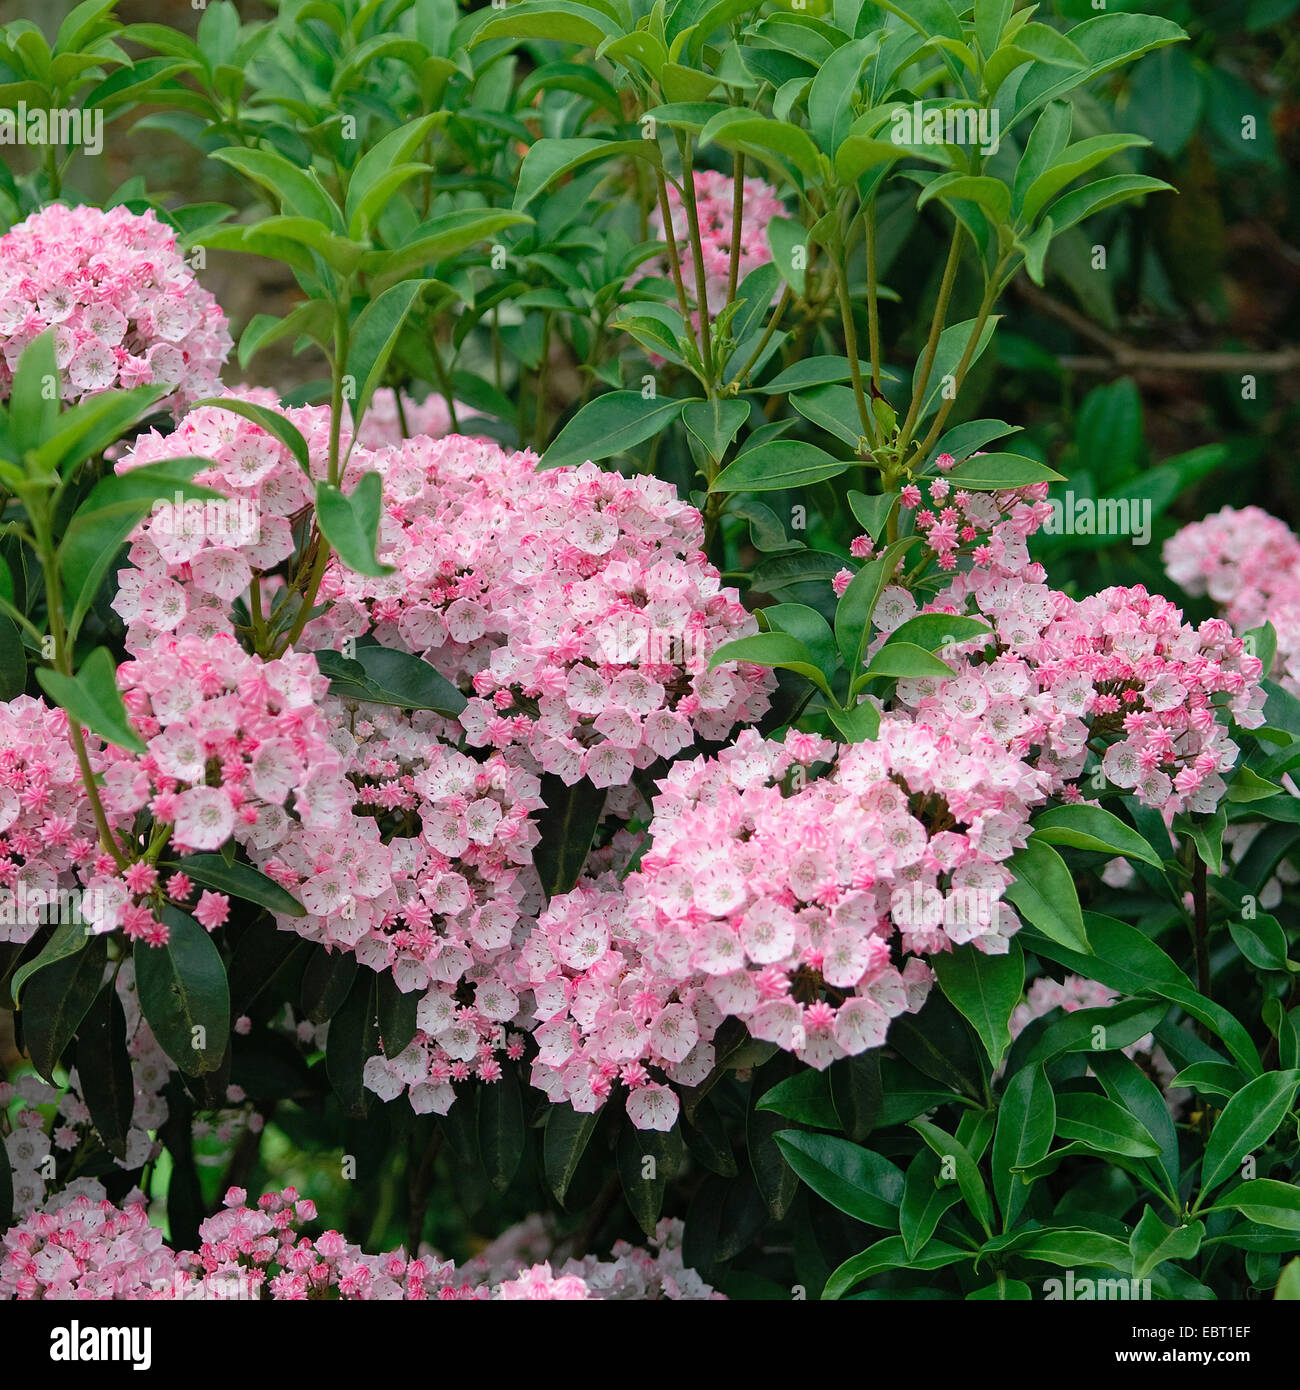 mountain laurel (Kalmia latifolia 'Cheerful', Kalmia latifolia Cheerful), cultivar Cheerful, blooming Stock Photo